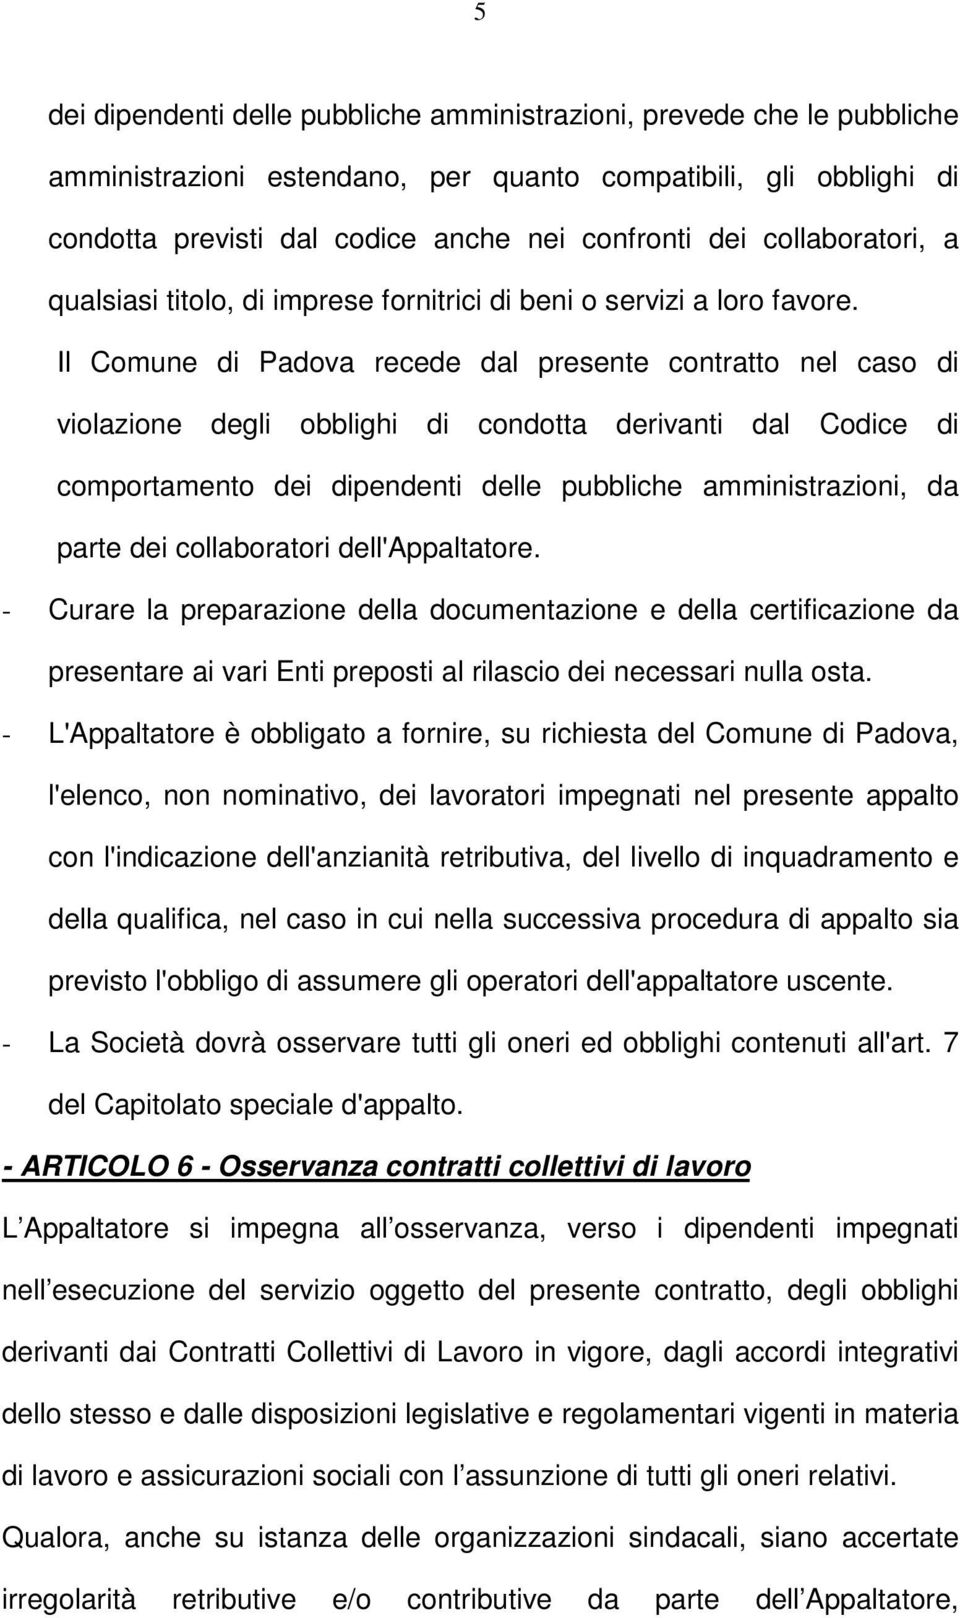 Il Comune di Padova recede dal presente contratto nel caso di violazione degli obblighi di condotta derivanti dal Codice di comportamento dei dipendenti delle pubbliche amministrazioni, da parte dei